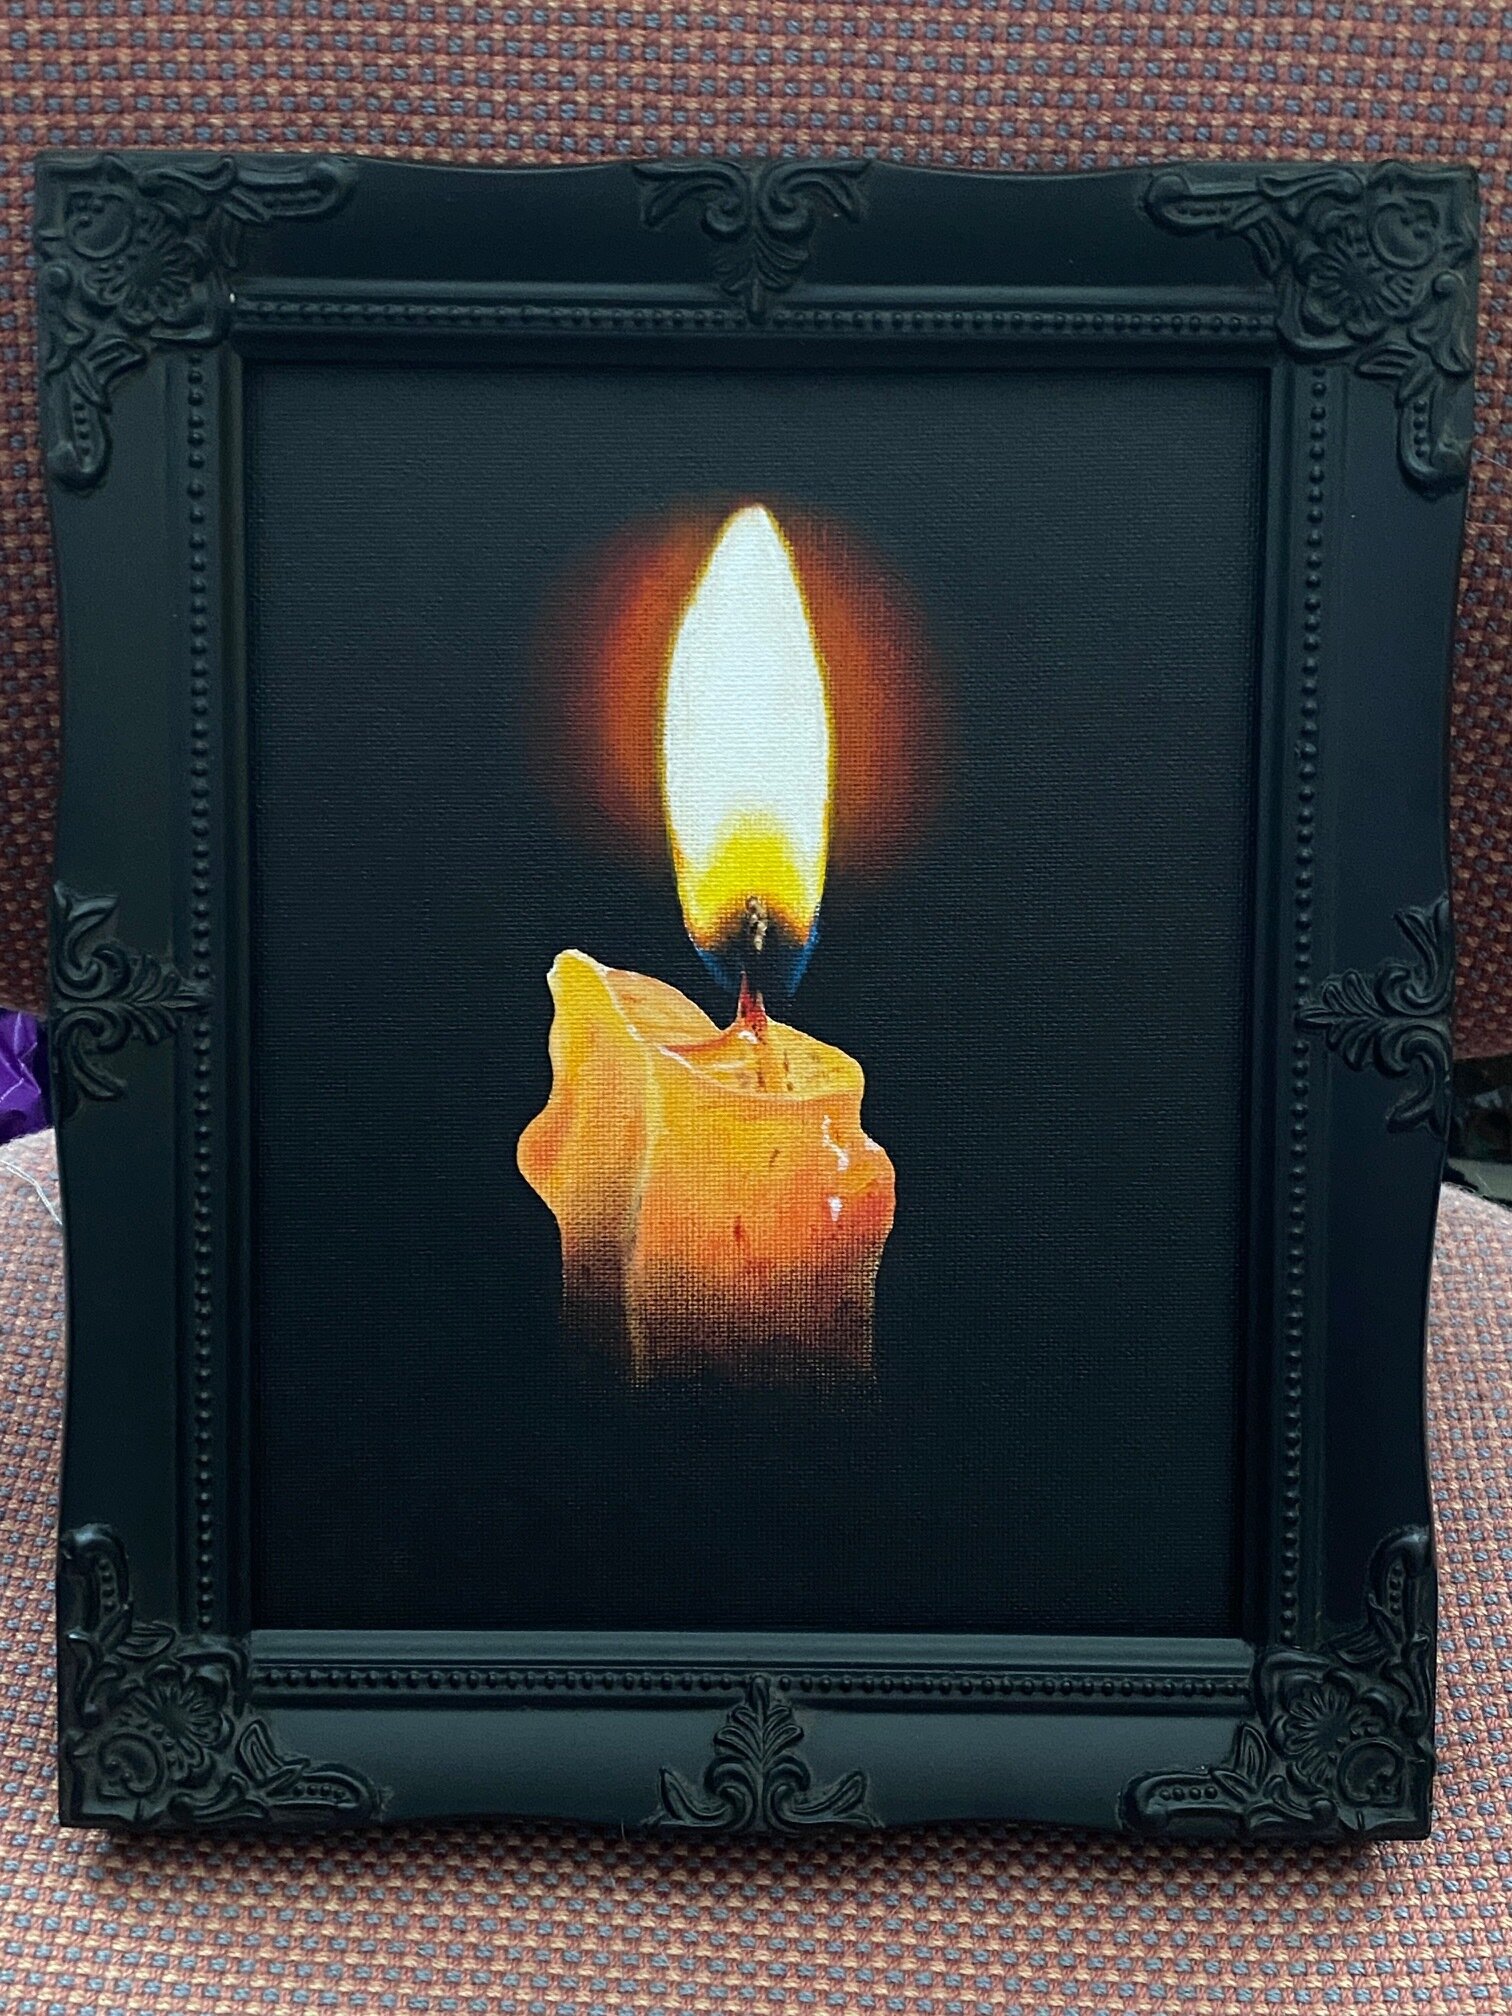 Candlelight II